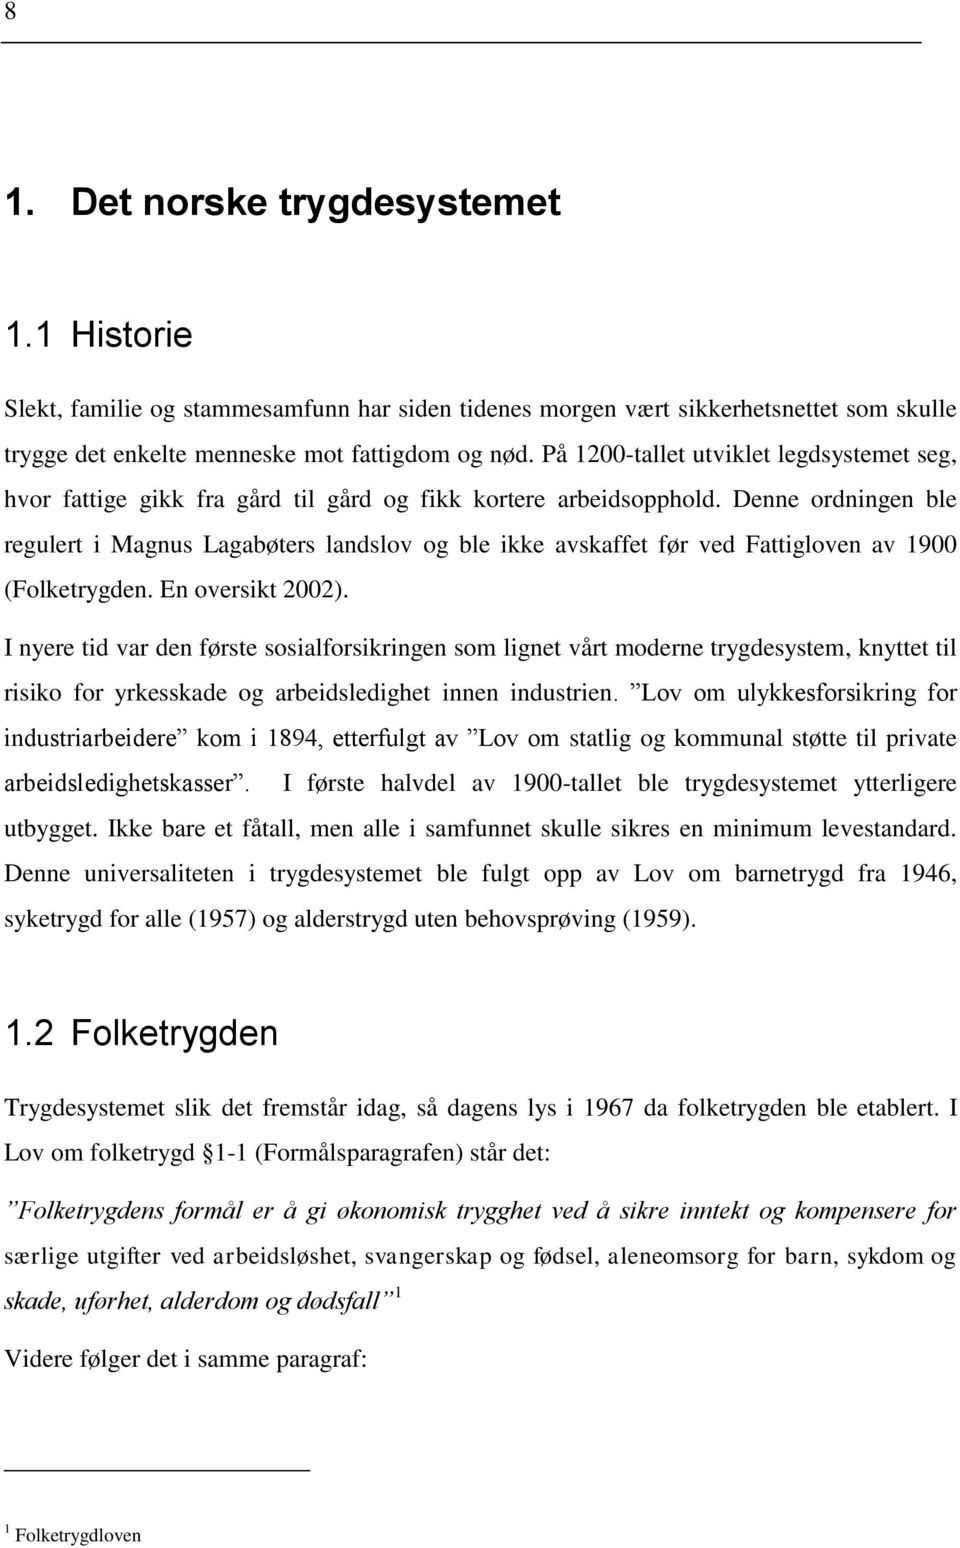 Denne ordningen ble regulert i Magnus Lagabøters landslov og ble ikke avskaffet før ved Fattigloven av 1900 (Folketrygden. En oversikt 2002).